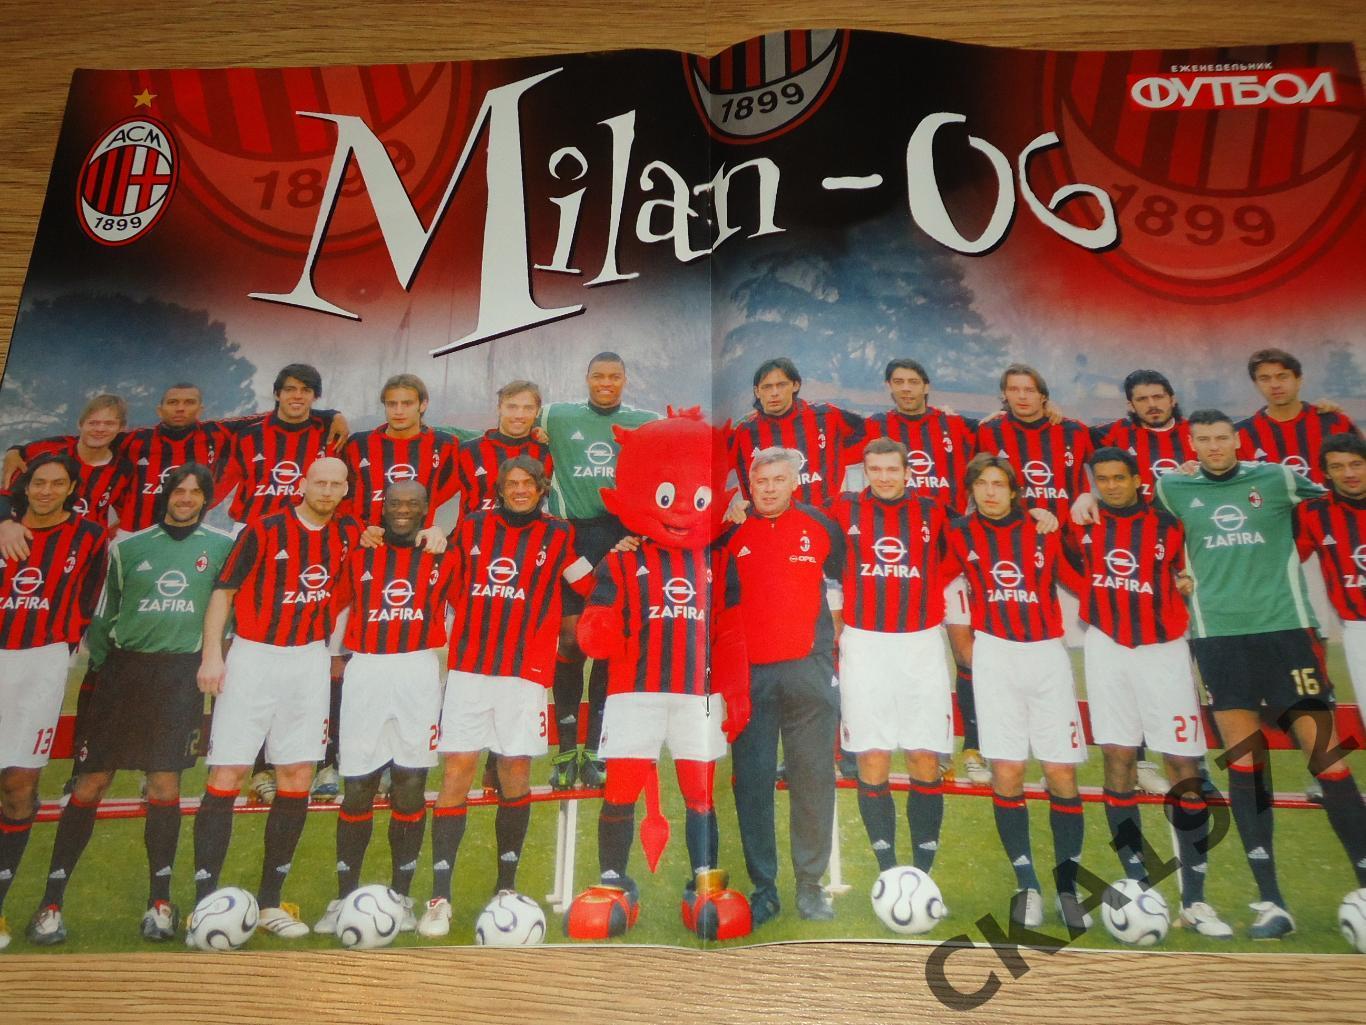 спецвыпуск газеты Футбол Великие клубы Милан Италия №5 2006 +++ 1